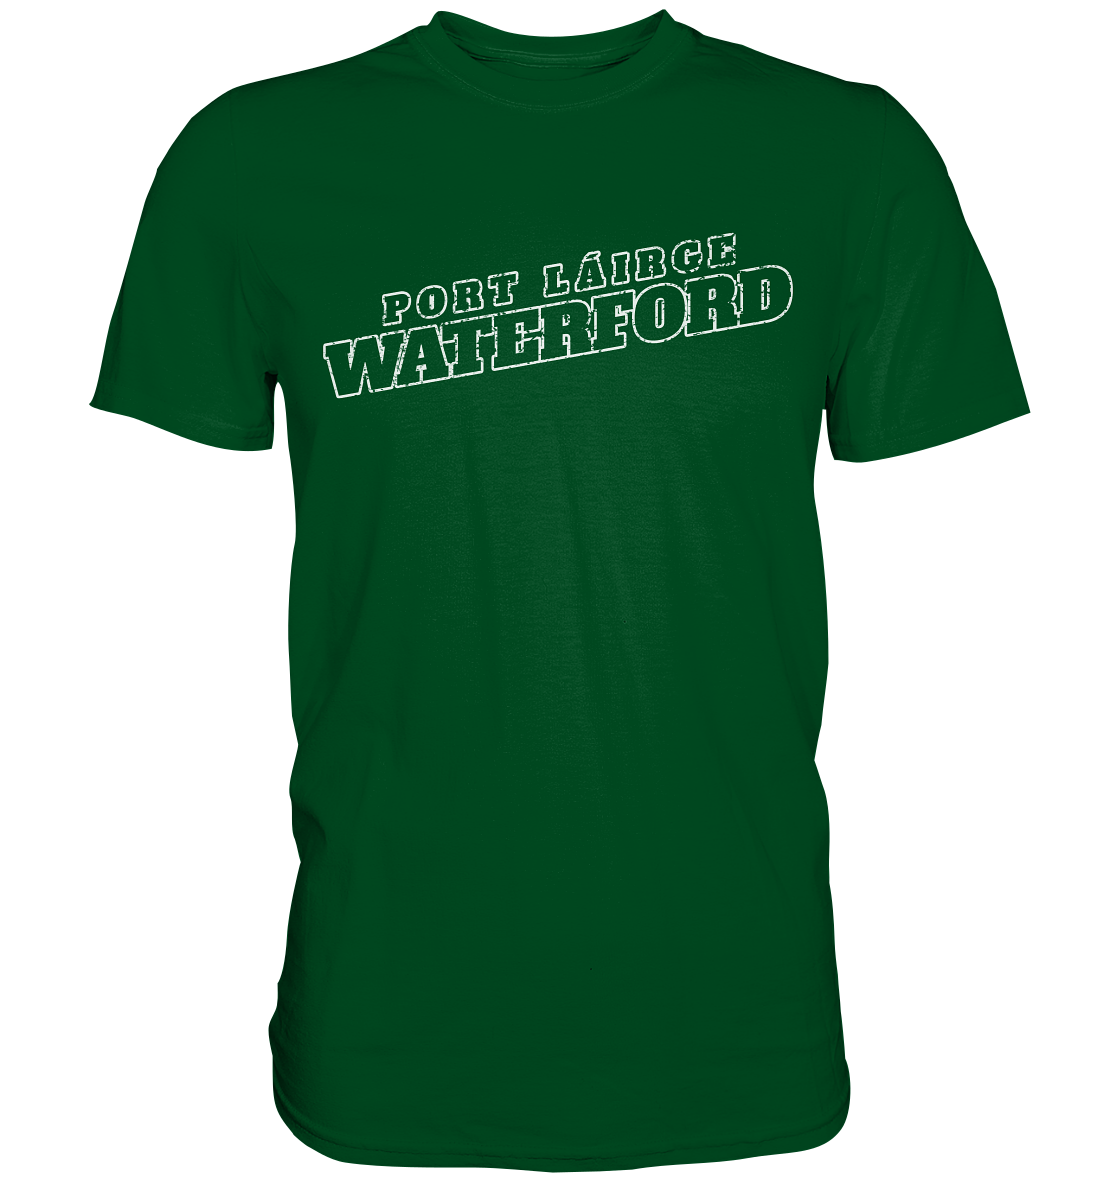 Cities Of Ireland "Waterford" - Premium Shirt